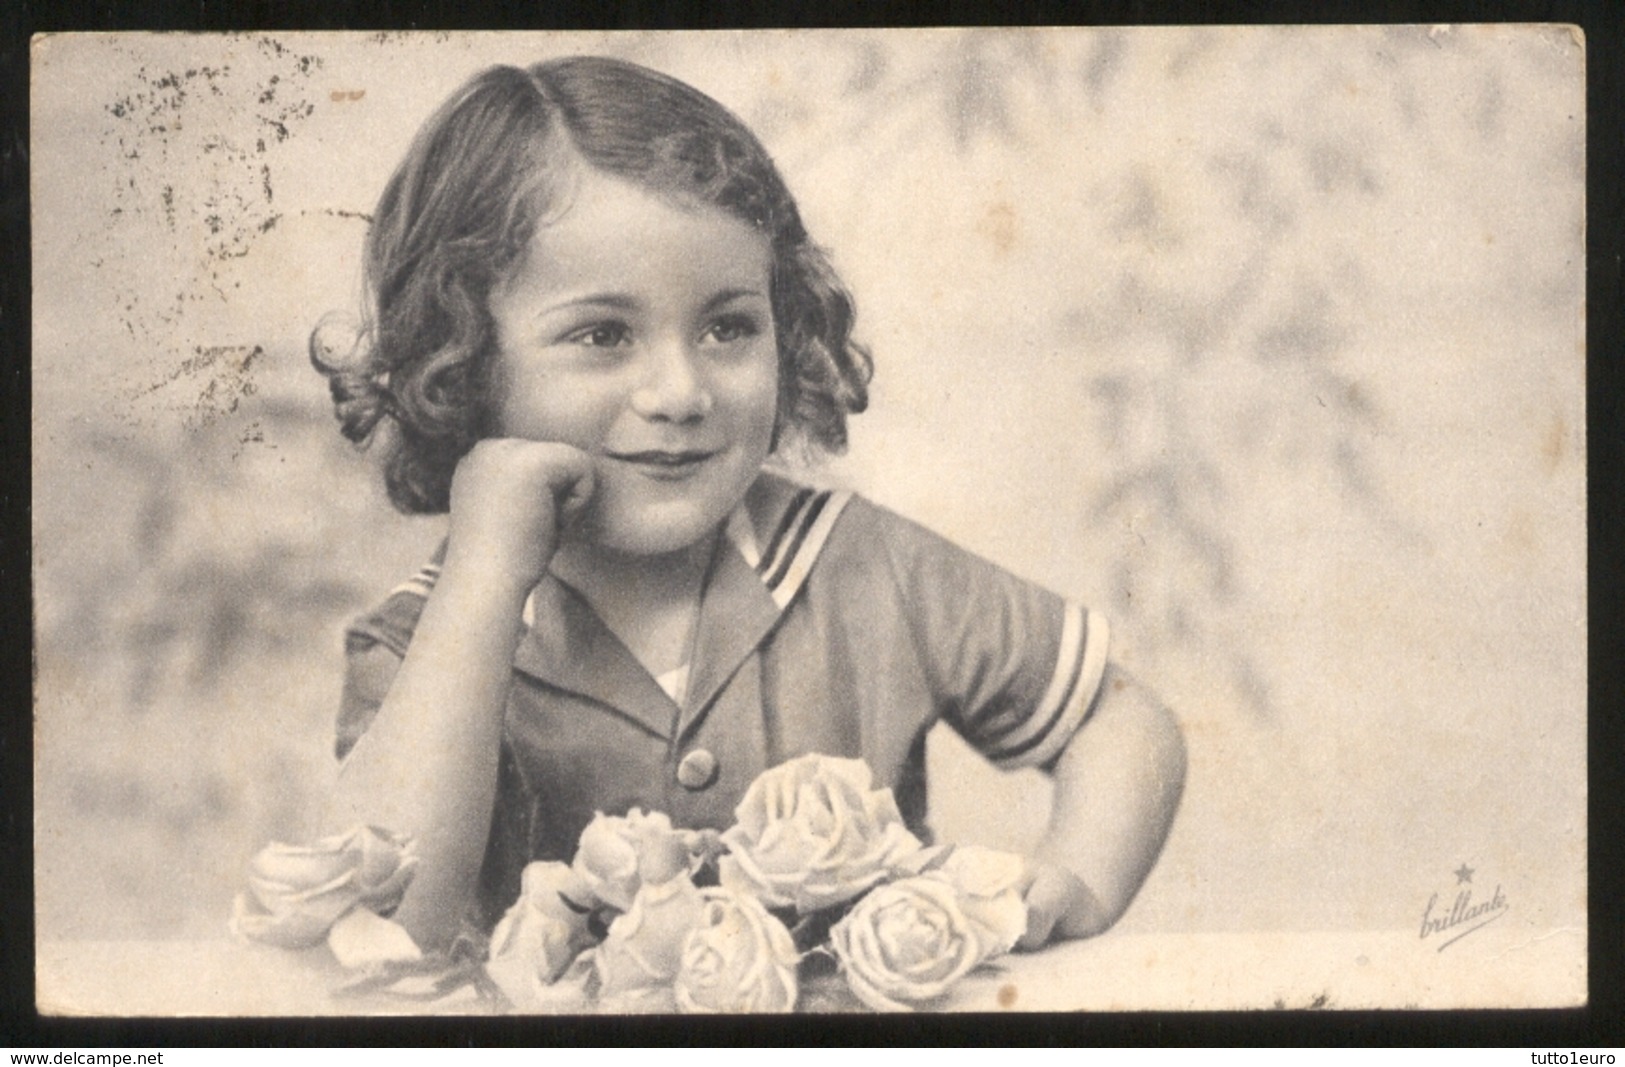 BAMBINI (62) - CHILDREN   KINDER   ENFANTS - CARTOLINA VIAGGIATA NEL 1941 CON TIMBRI CENSURA REGIA MARINA - LIEVE GRINZA - Ritratti